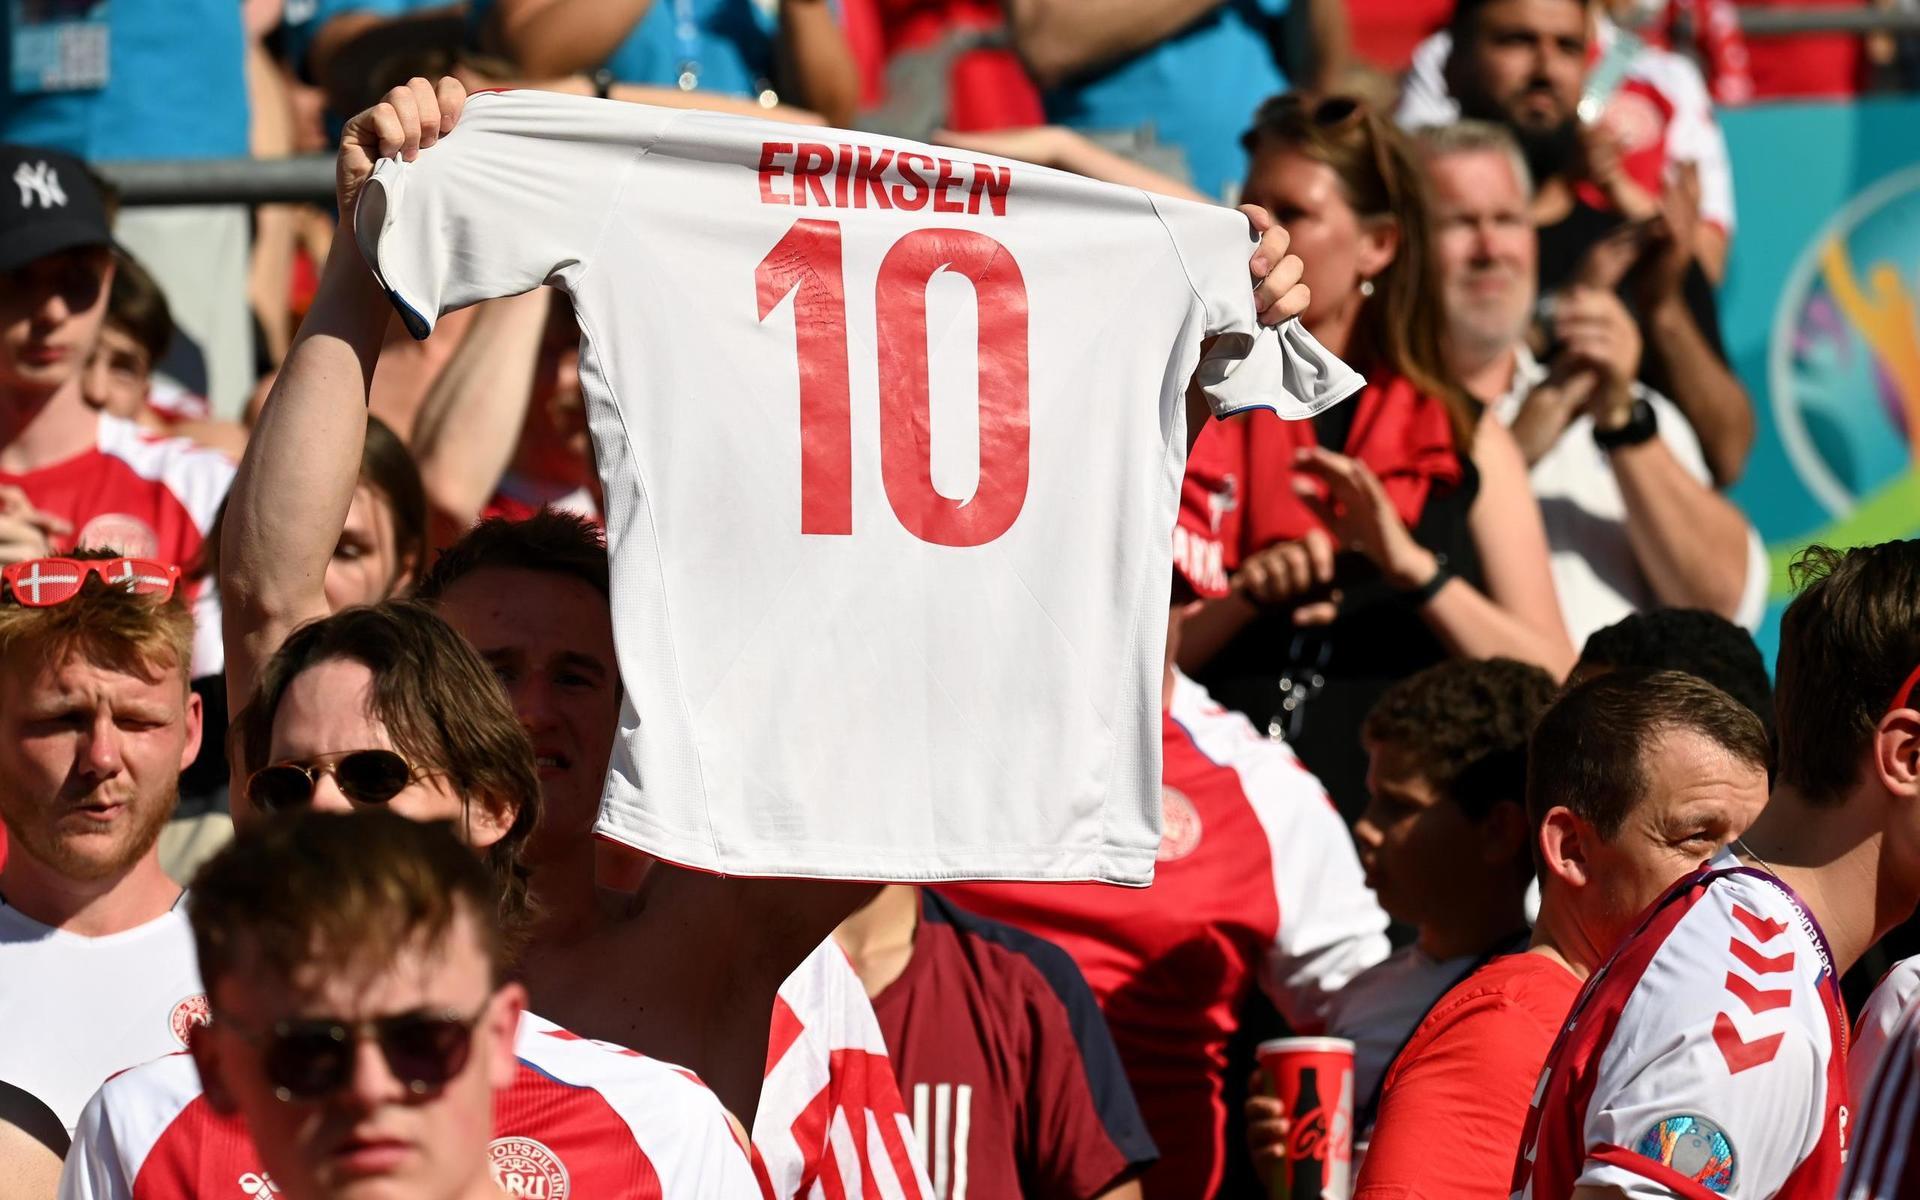 Flera fans hade tröjor med Eriksens namn på.